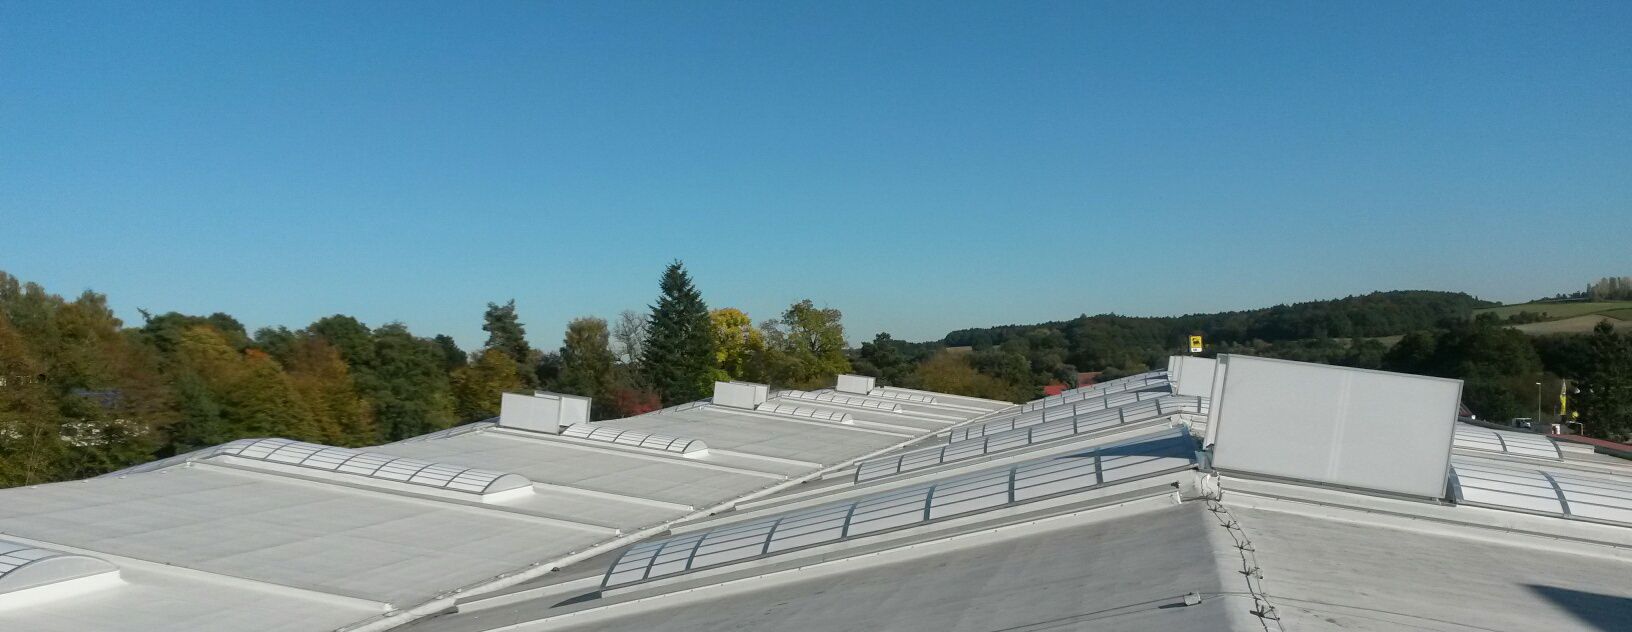 ATTRIA GmbH in Tattendorf - Dach- und Wandverglasungen